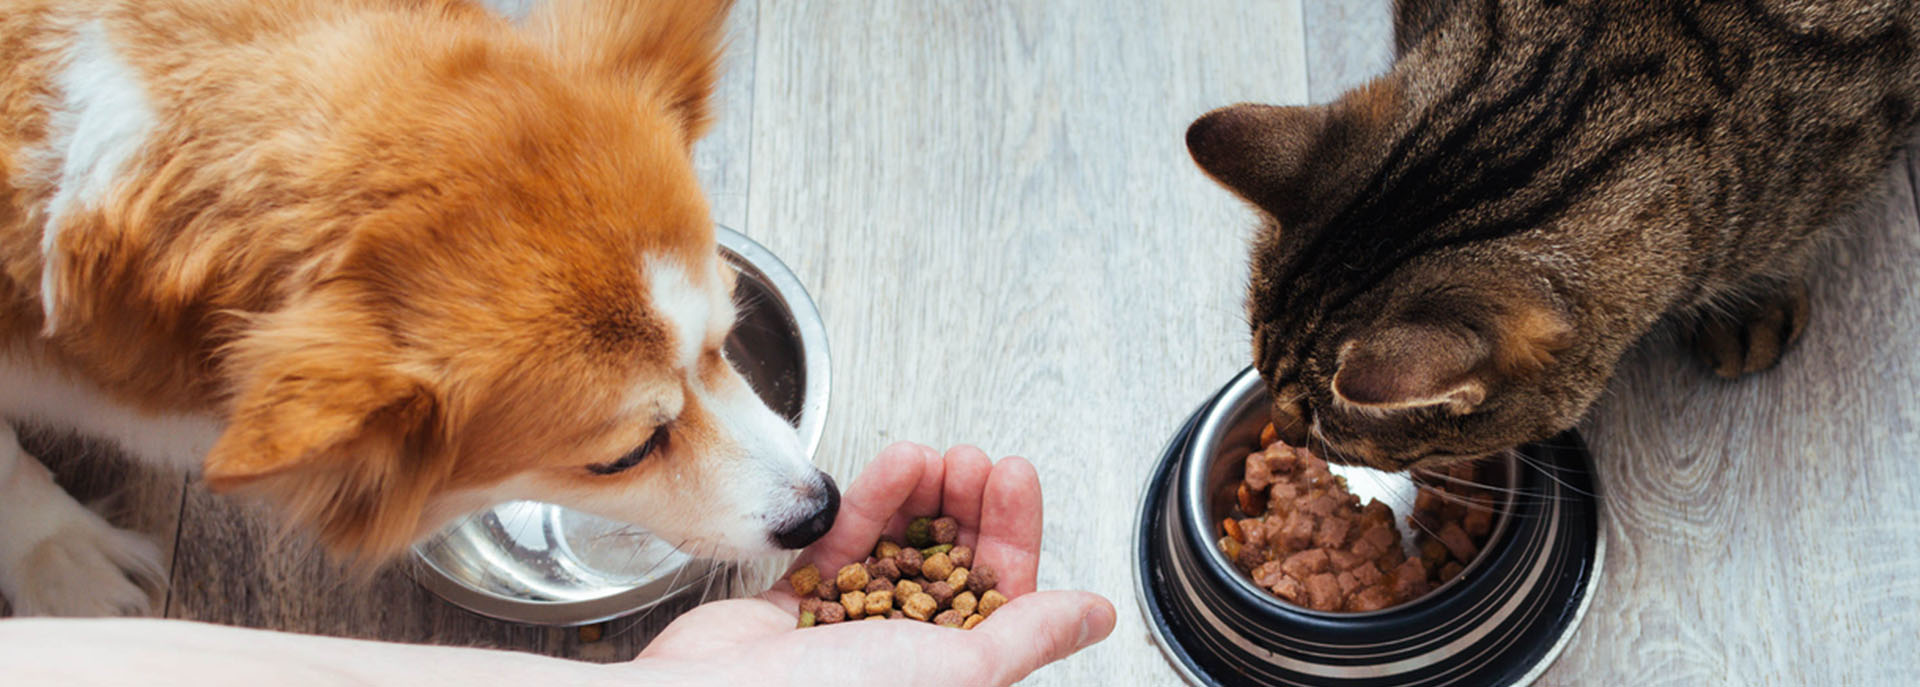 Fôrtilskudd til hund og katt